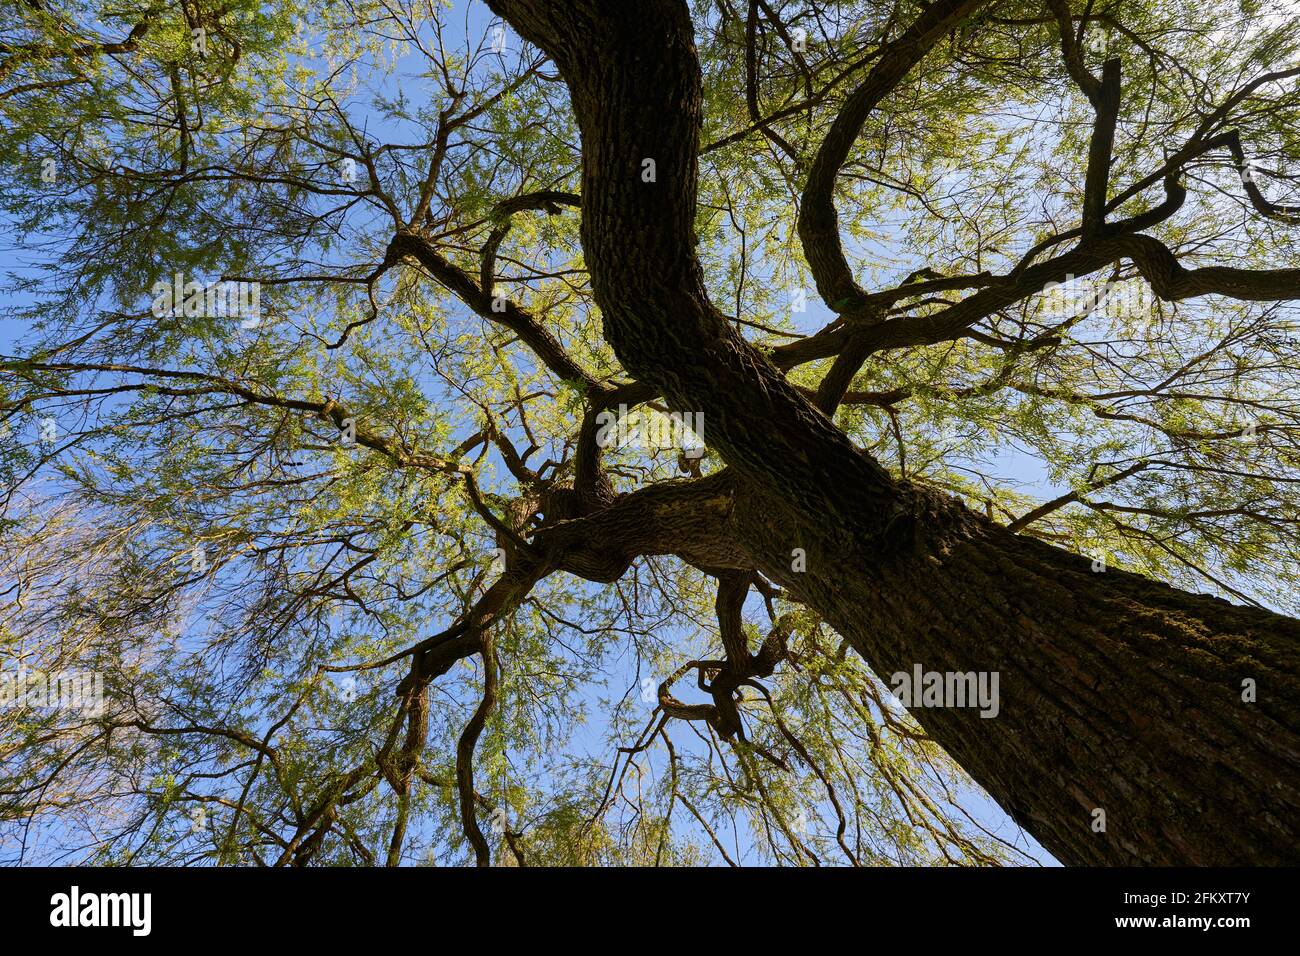 Arborea piangente salice (Salix crisocoma, goldene Trauerweide) pianta fiorente in primavera con gambo marrone e foglie verdi. Vista obliqua dal basso. Foto Stock